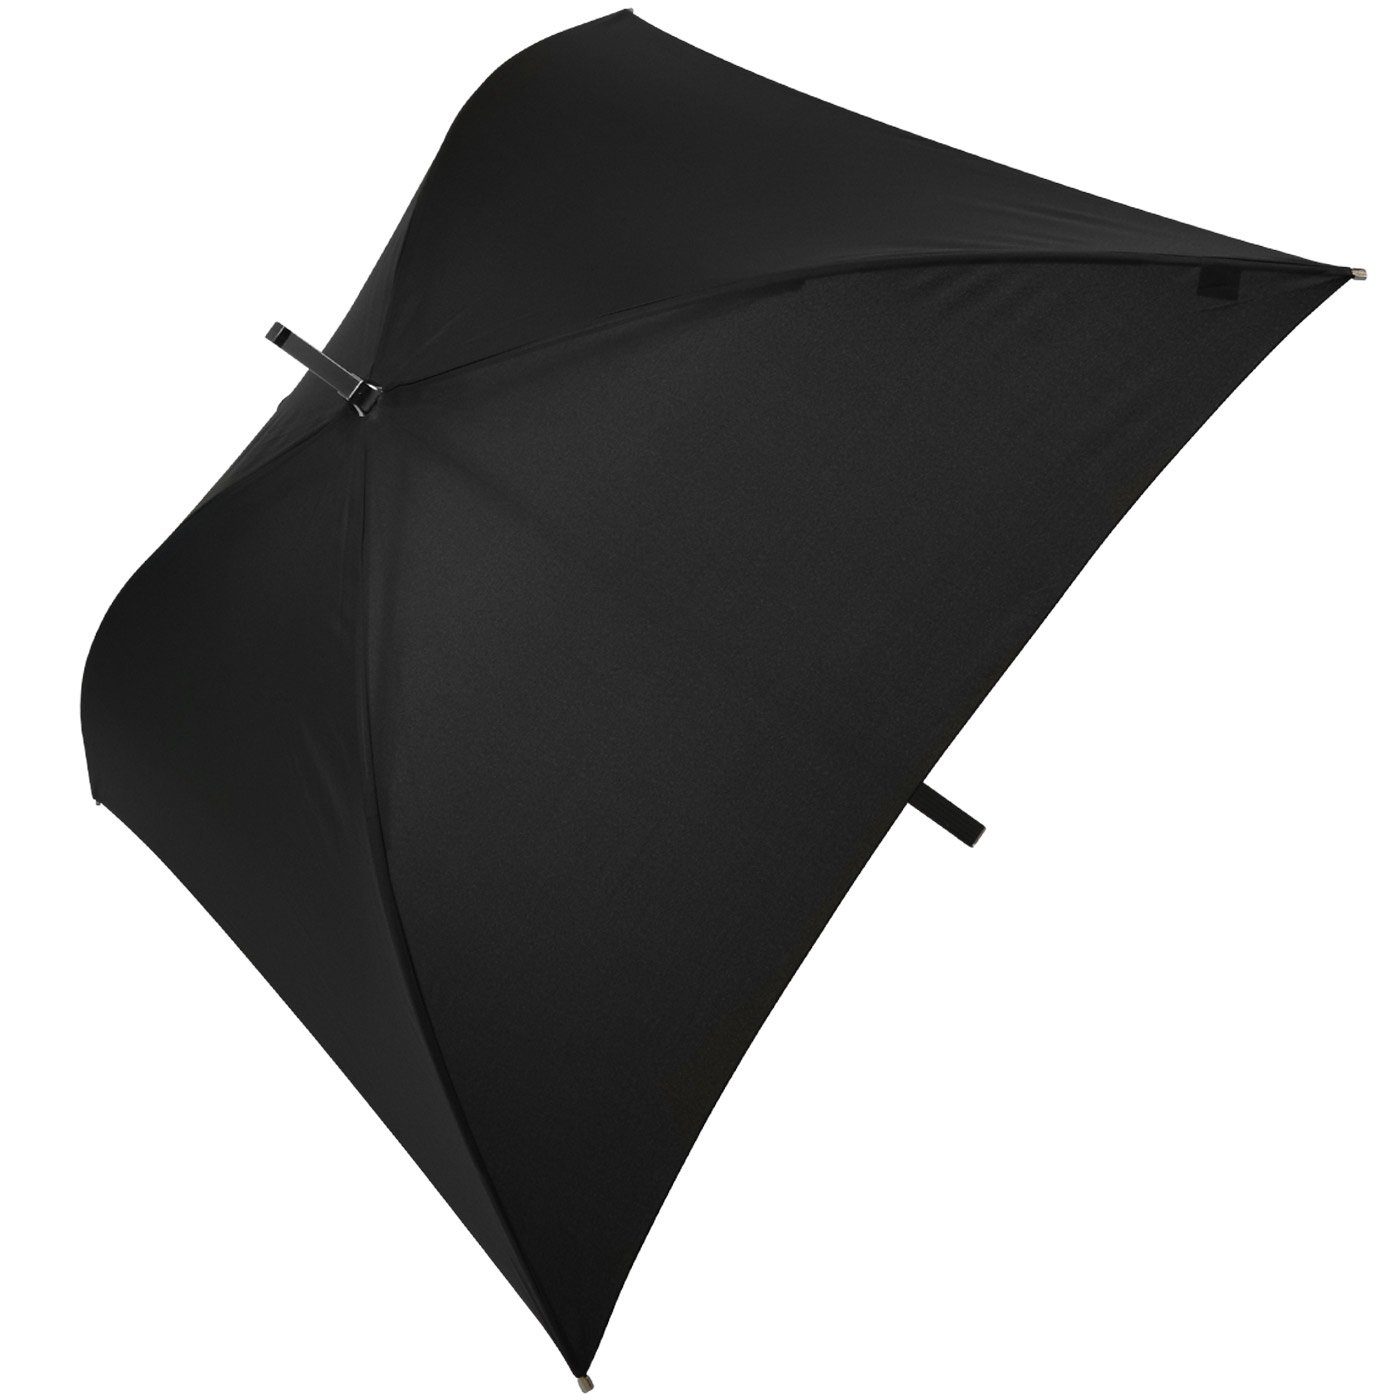 besondere All Impliva voll schwarz Square® Regenschirm, Regenschirm ganz quadratischer Langregenschirm der